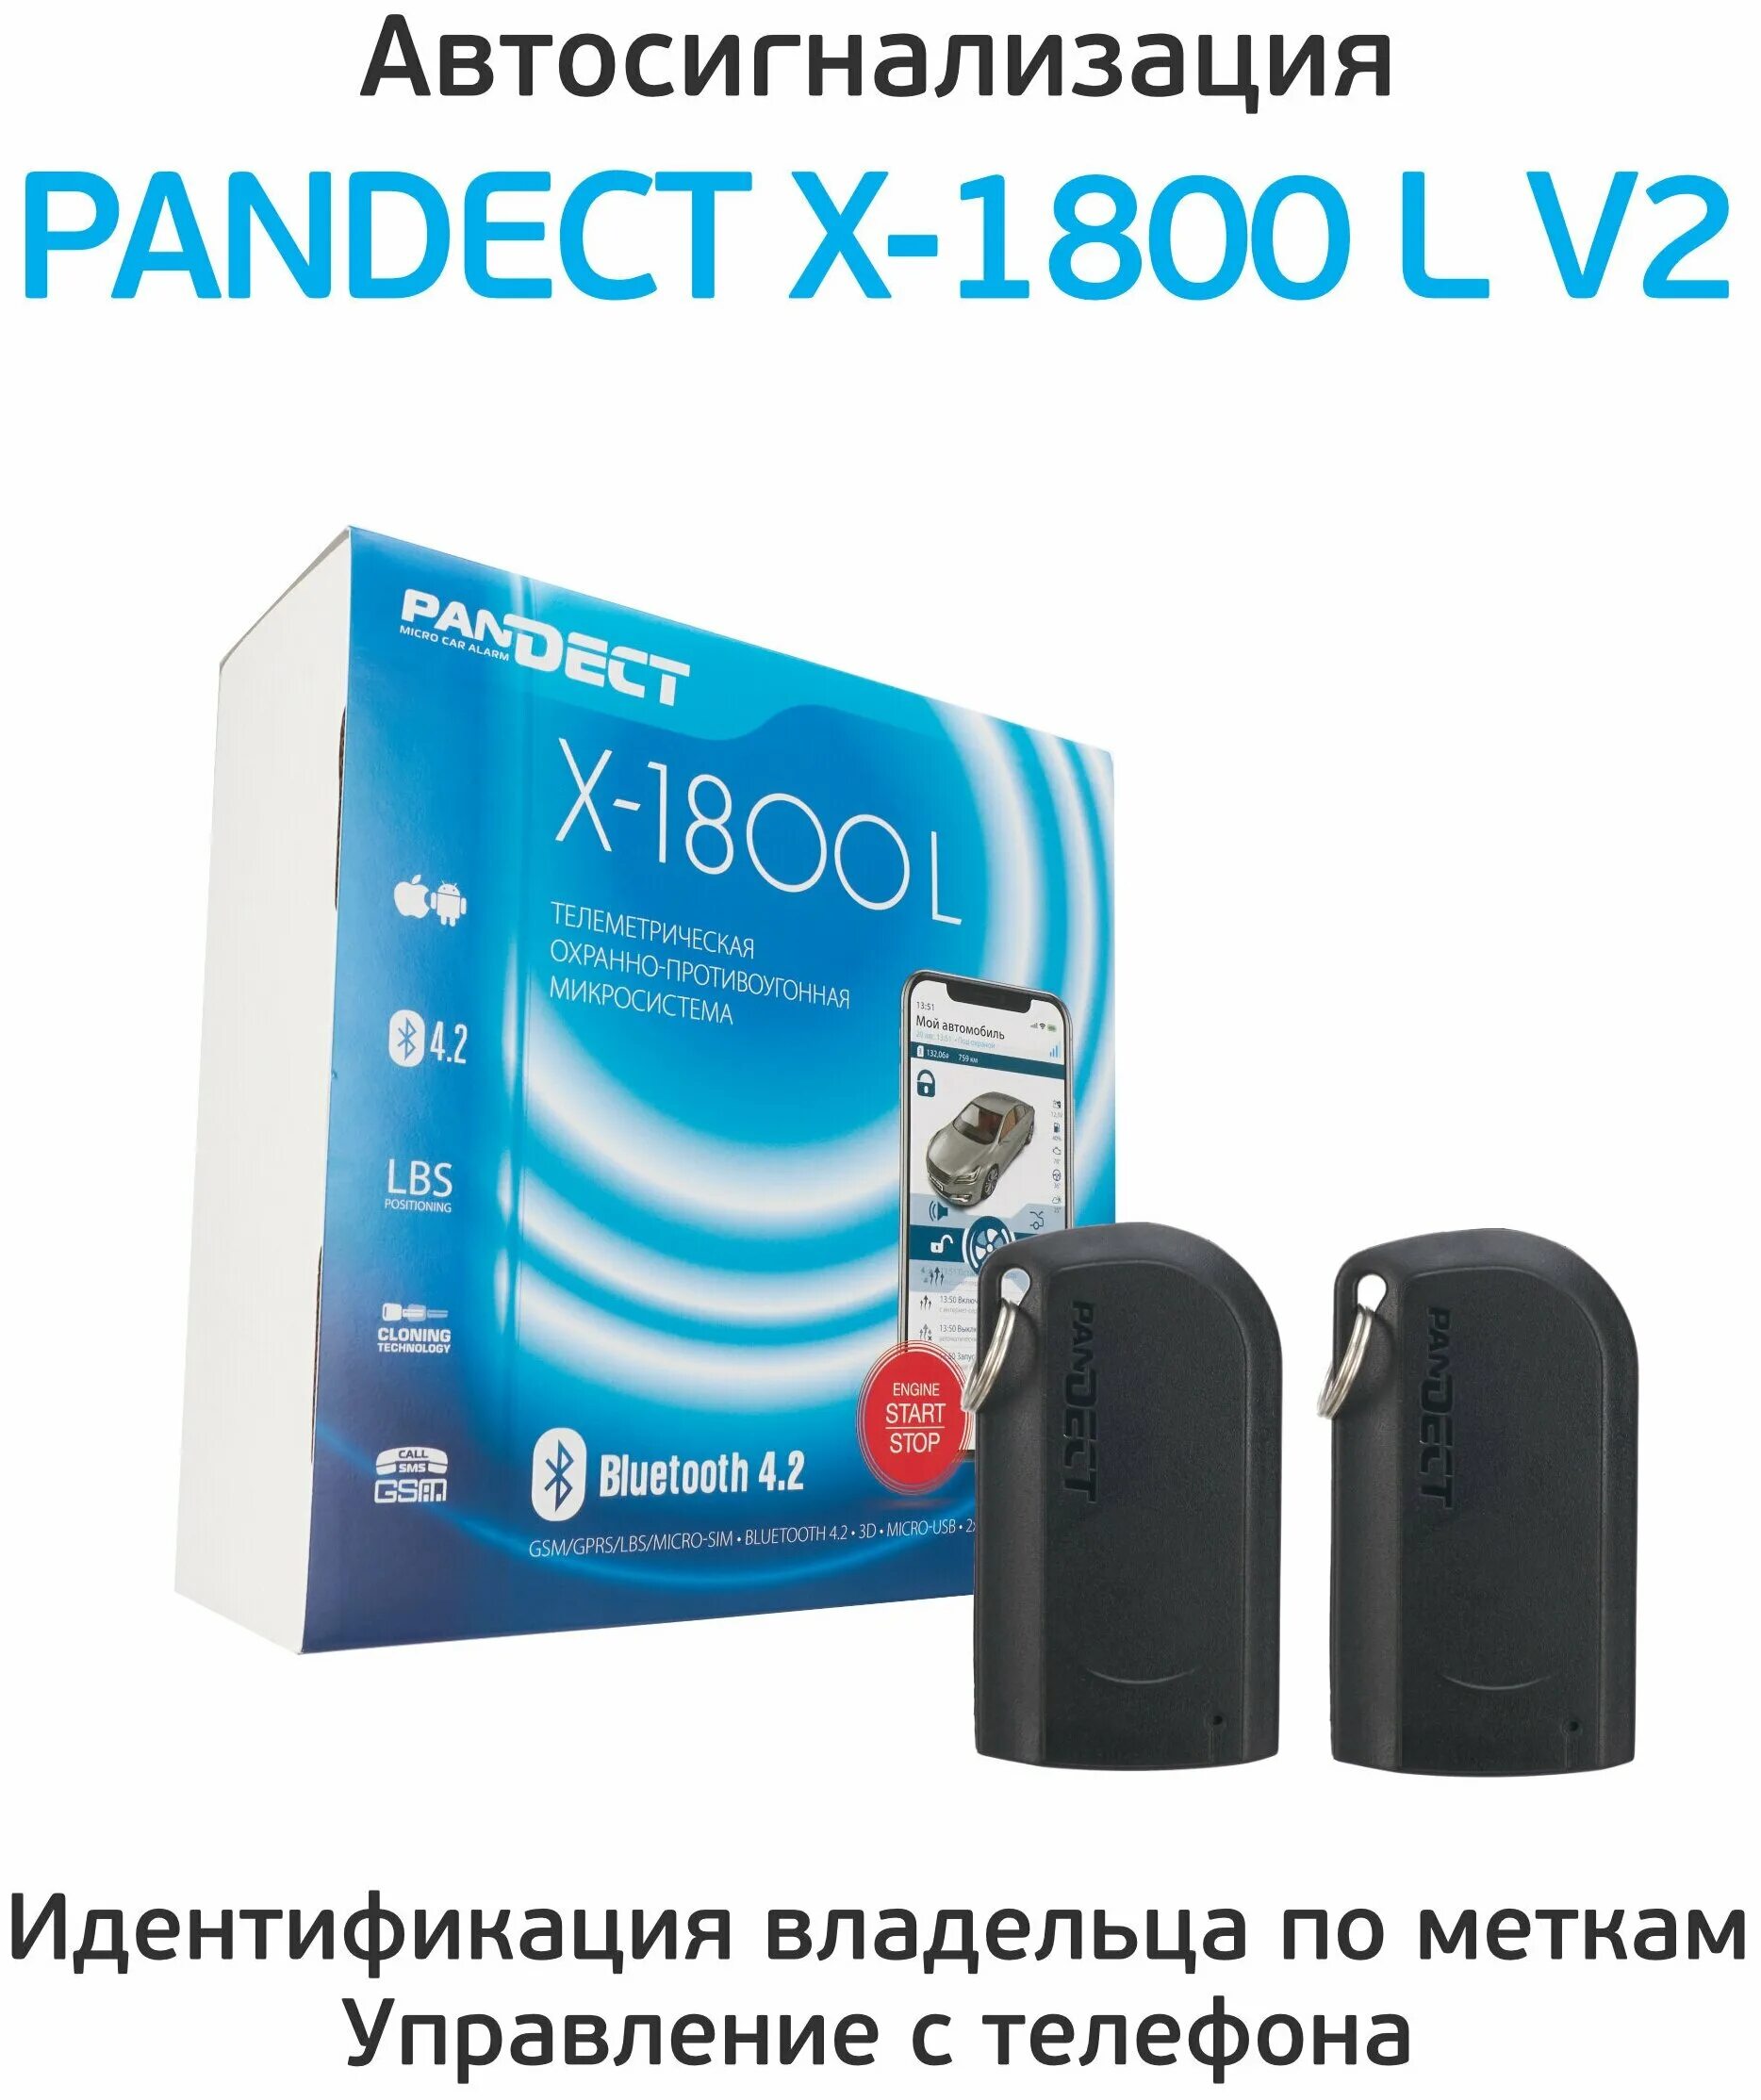 Pandect x-1800 l v2. Pandect x 1800l v2 автосигнализация. Сигнализация Пандора 1800l. Сигнализация Pandect x-1800 l.